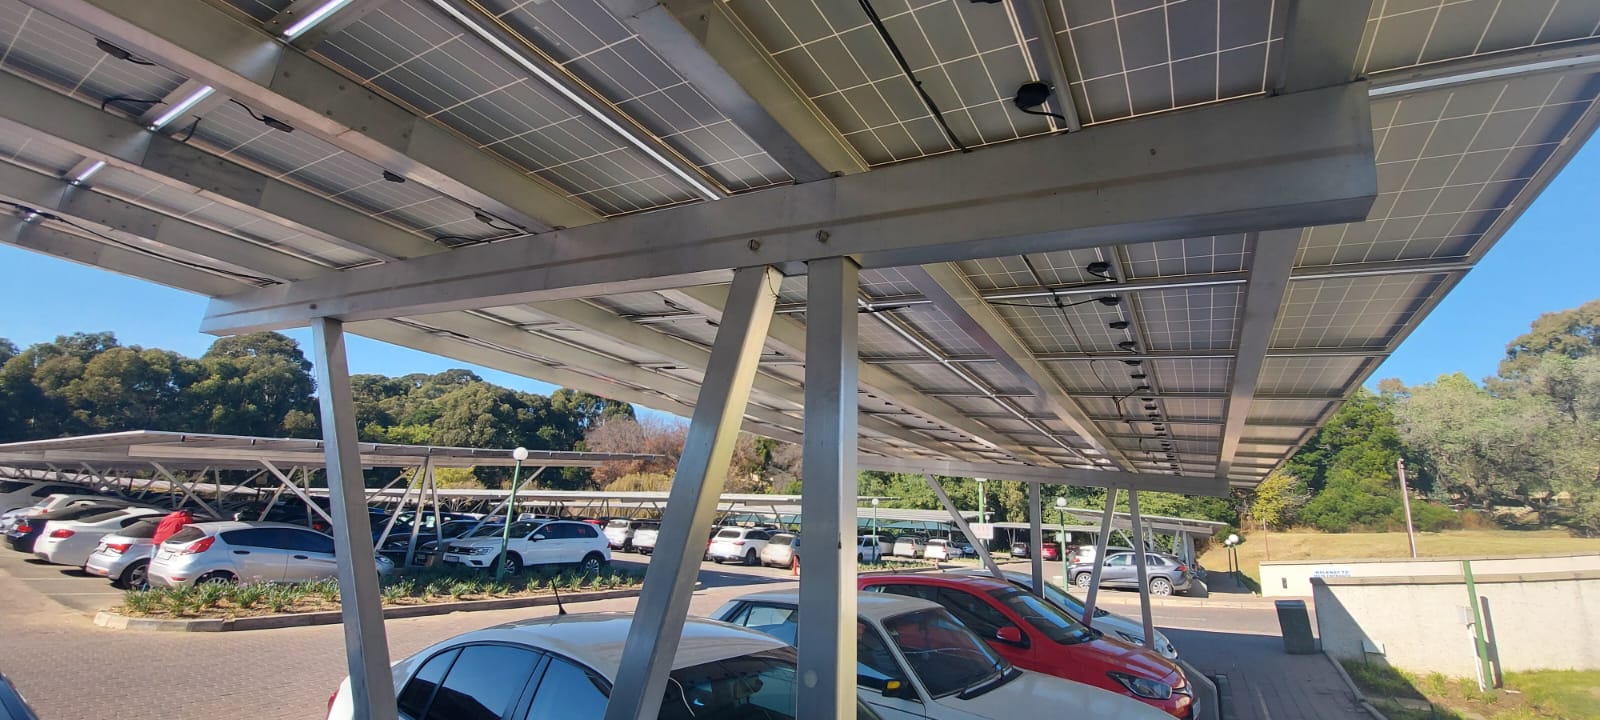 Solar Carport Cost